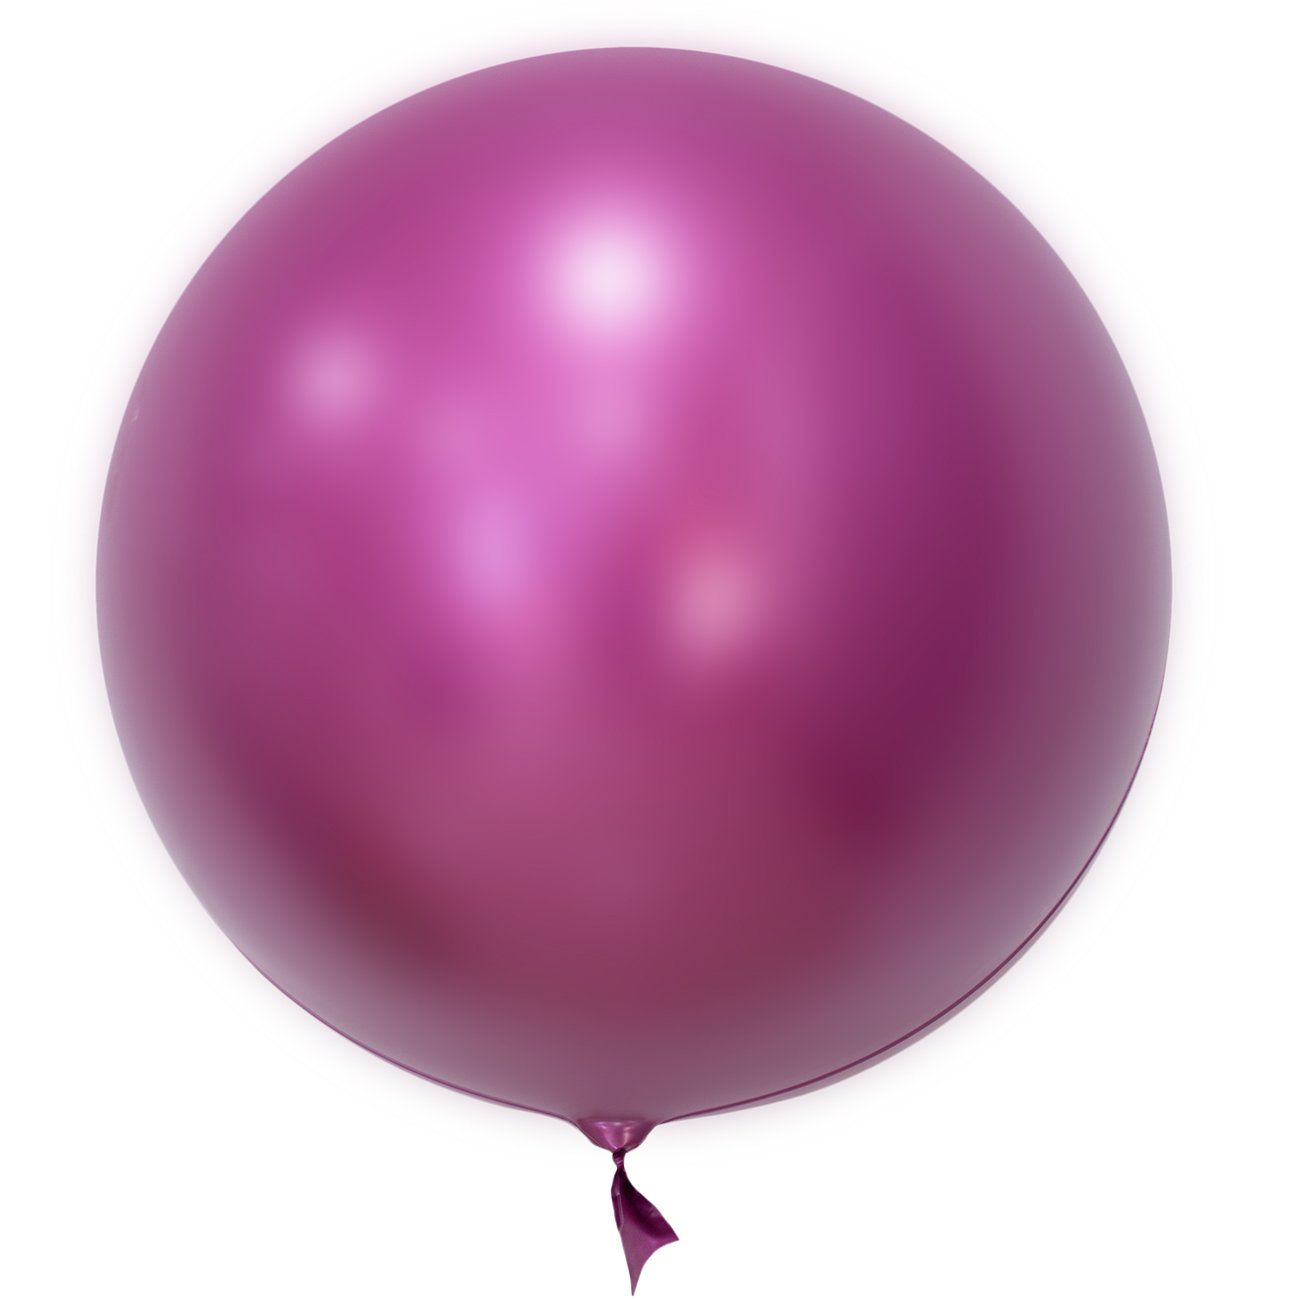 Balão Mundo Bizarro